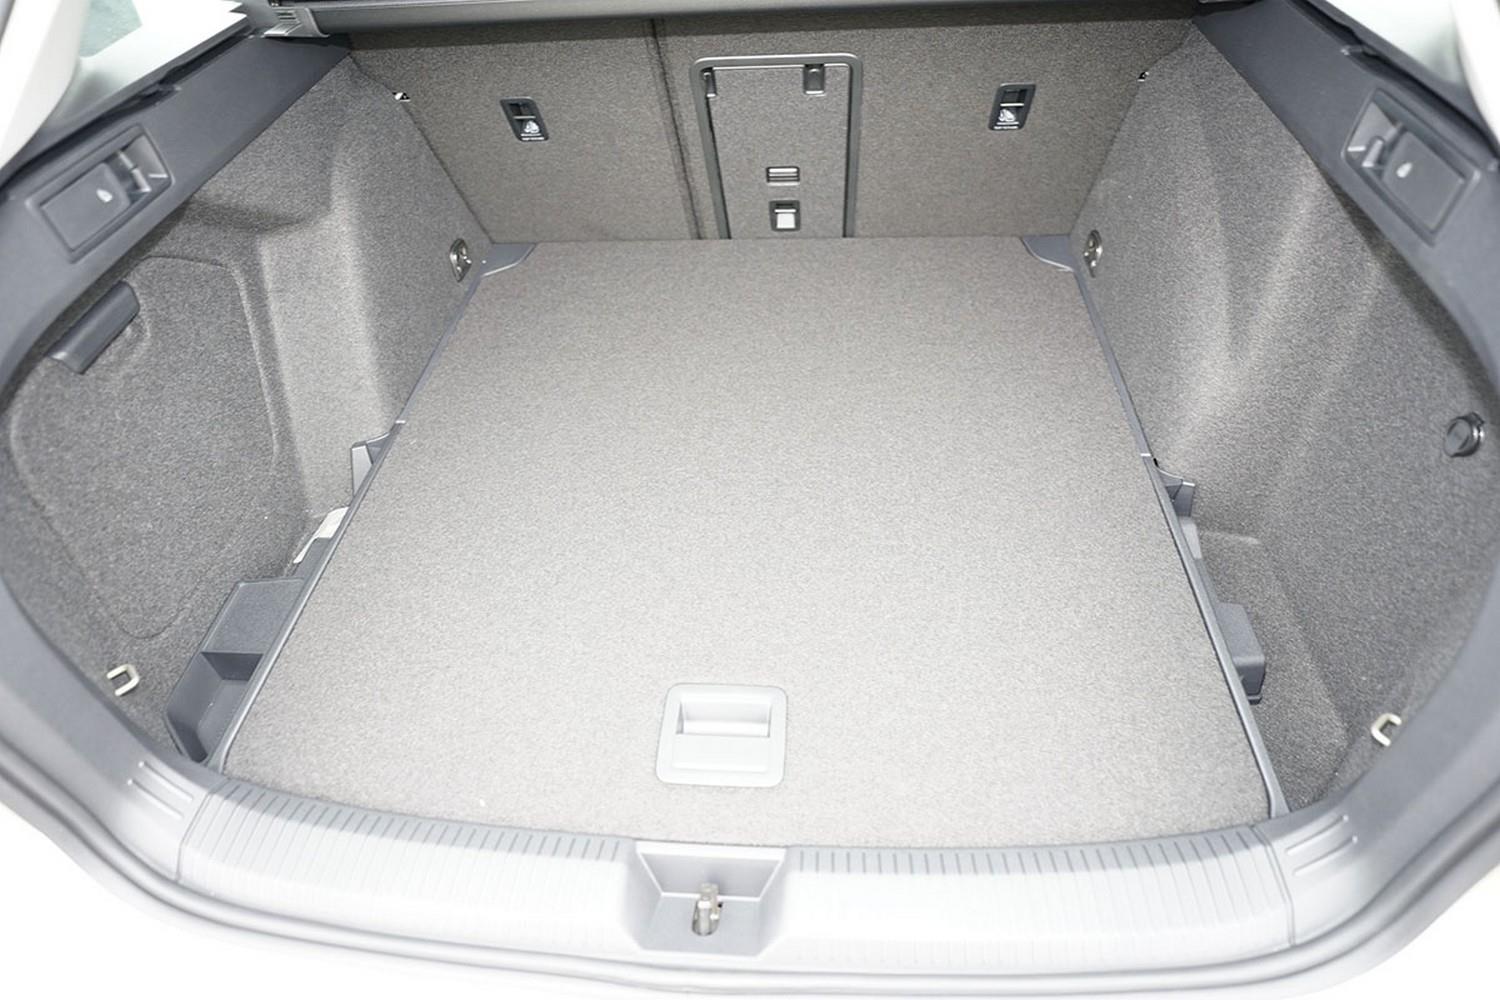 rensi liner Kofferraumschalenmatte für VW Golf 7 Sportsvan variabler  Ladeboden oben + unten, Bj. 05.14